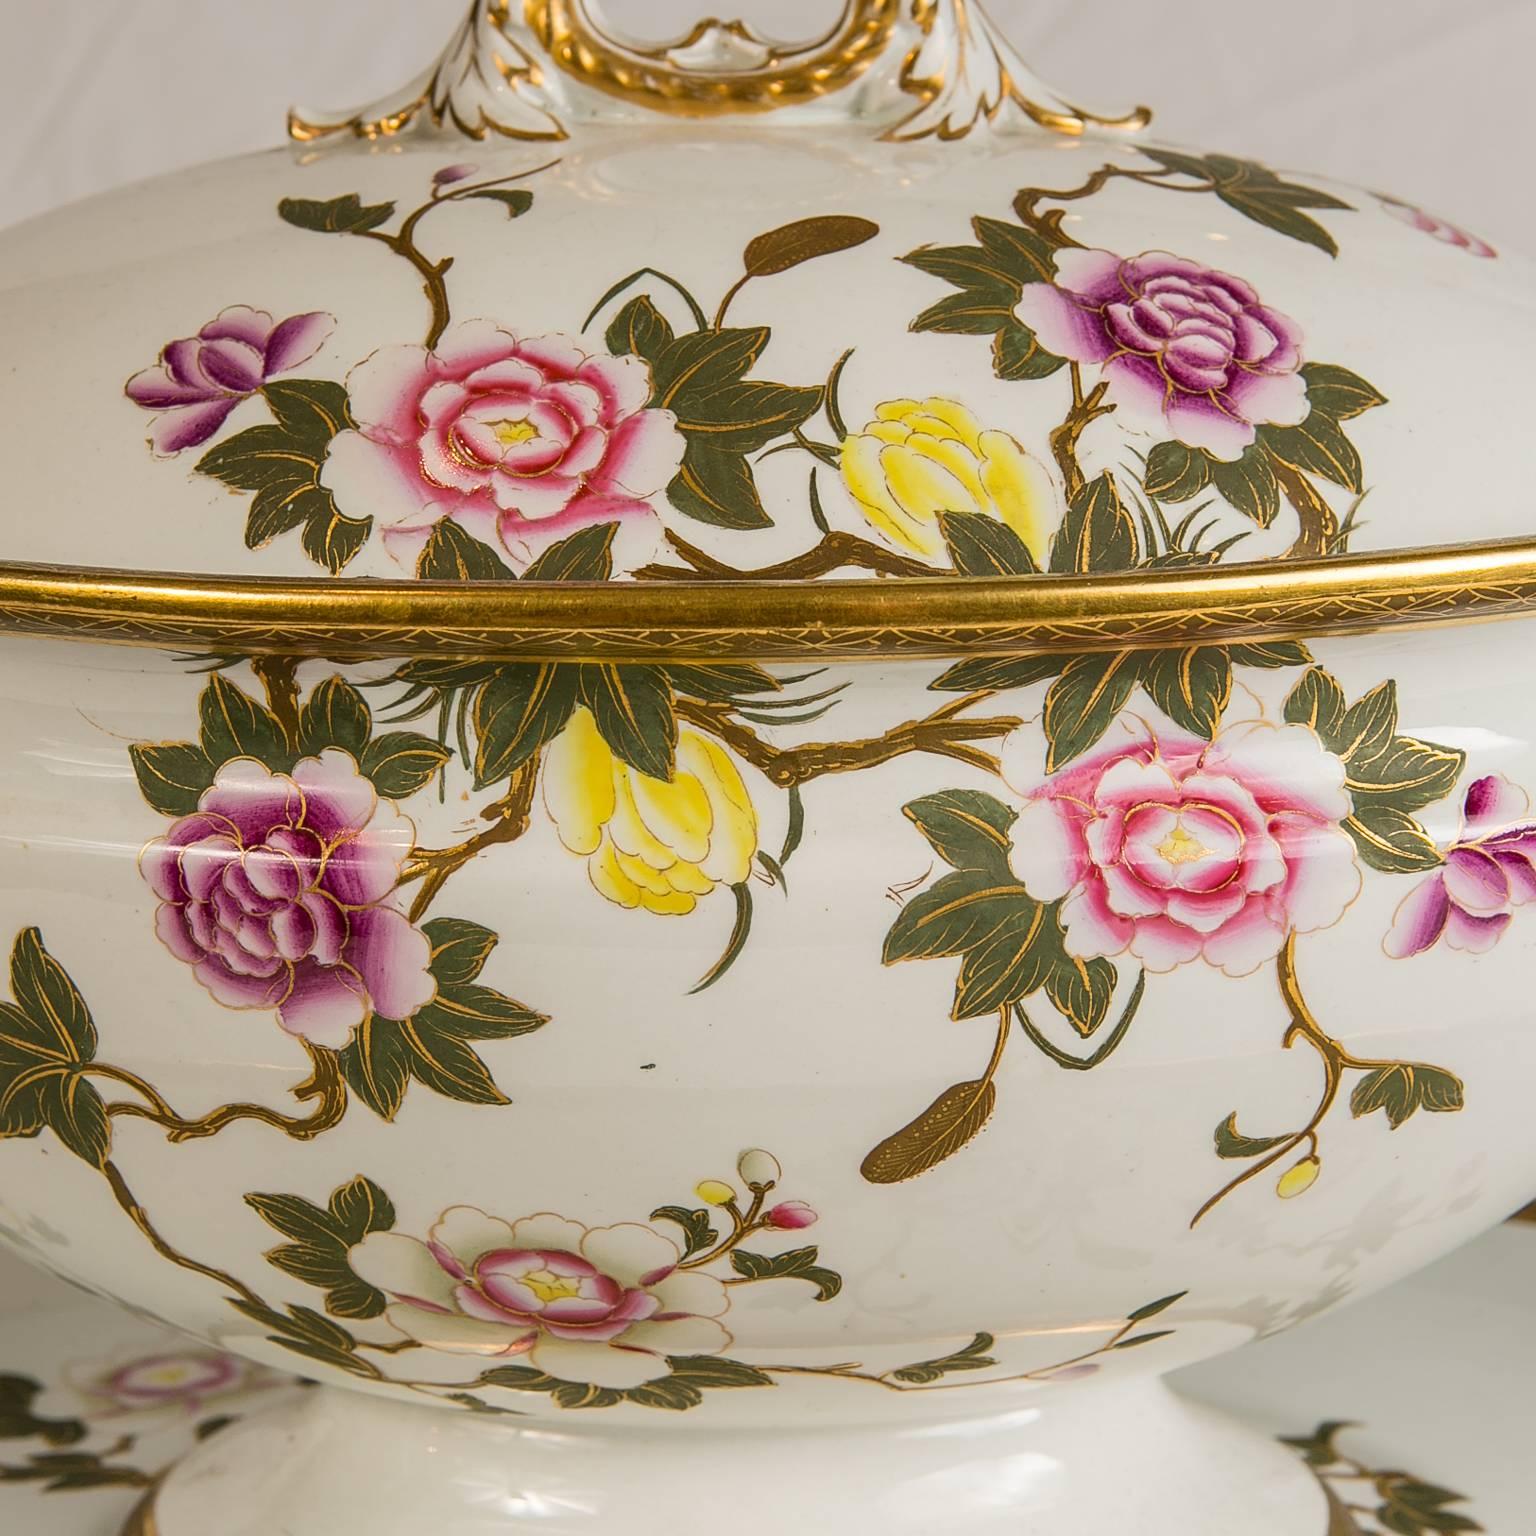 Diese große Royal Worcester Suppenterrine mit Ständer ist mit zarten rosa, violetten, weißen und gelben Rosen und zartgrünen Blättern verziert, die mit Gold akzentuiert sind. Die Endkappe und die Griffe sind in Form von Zweigen gefertigt, die den